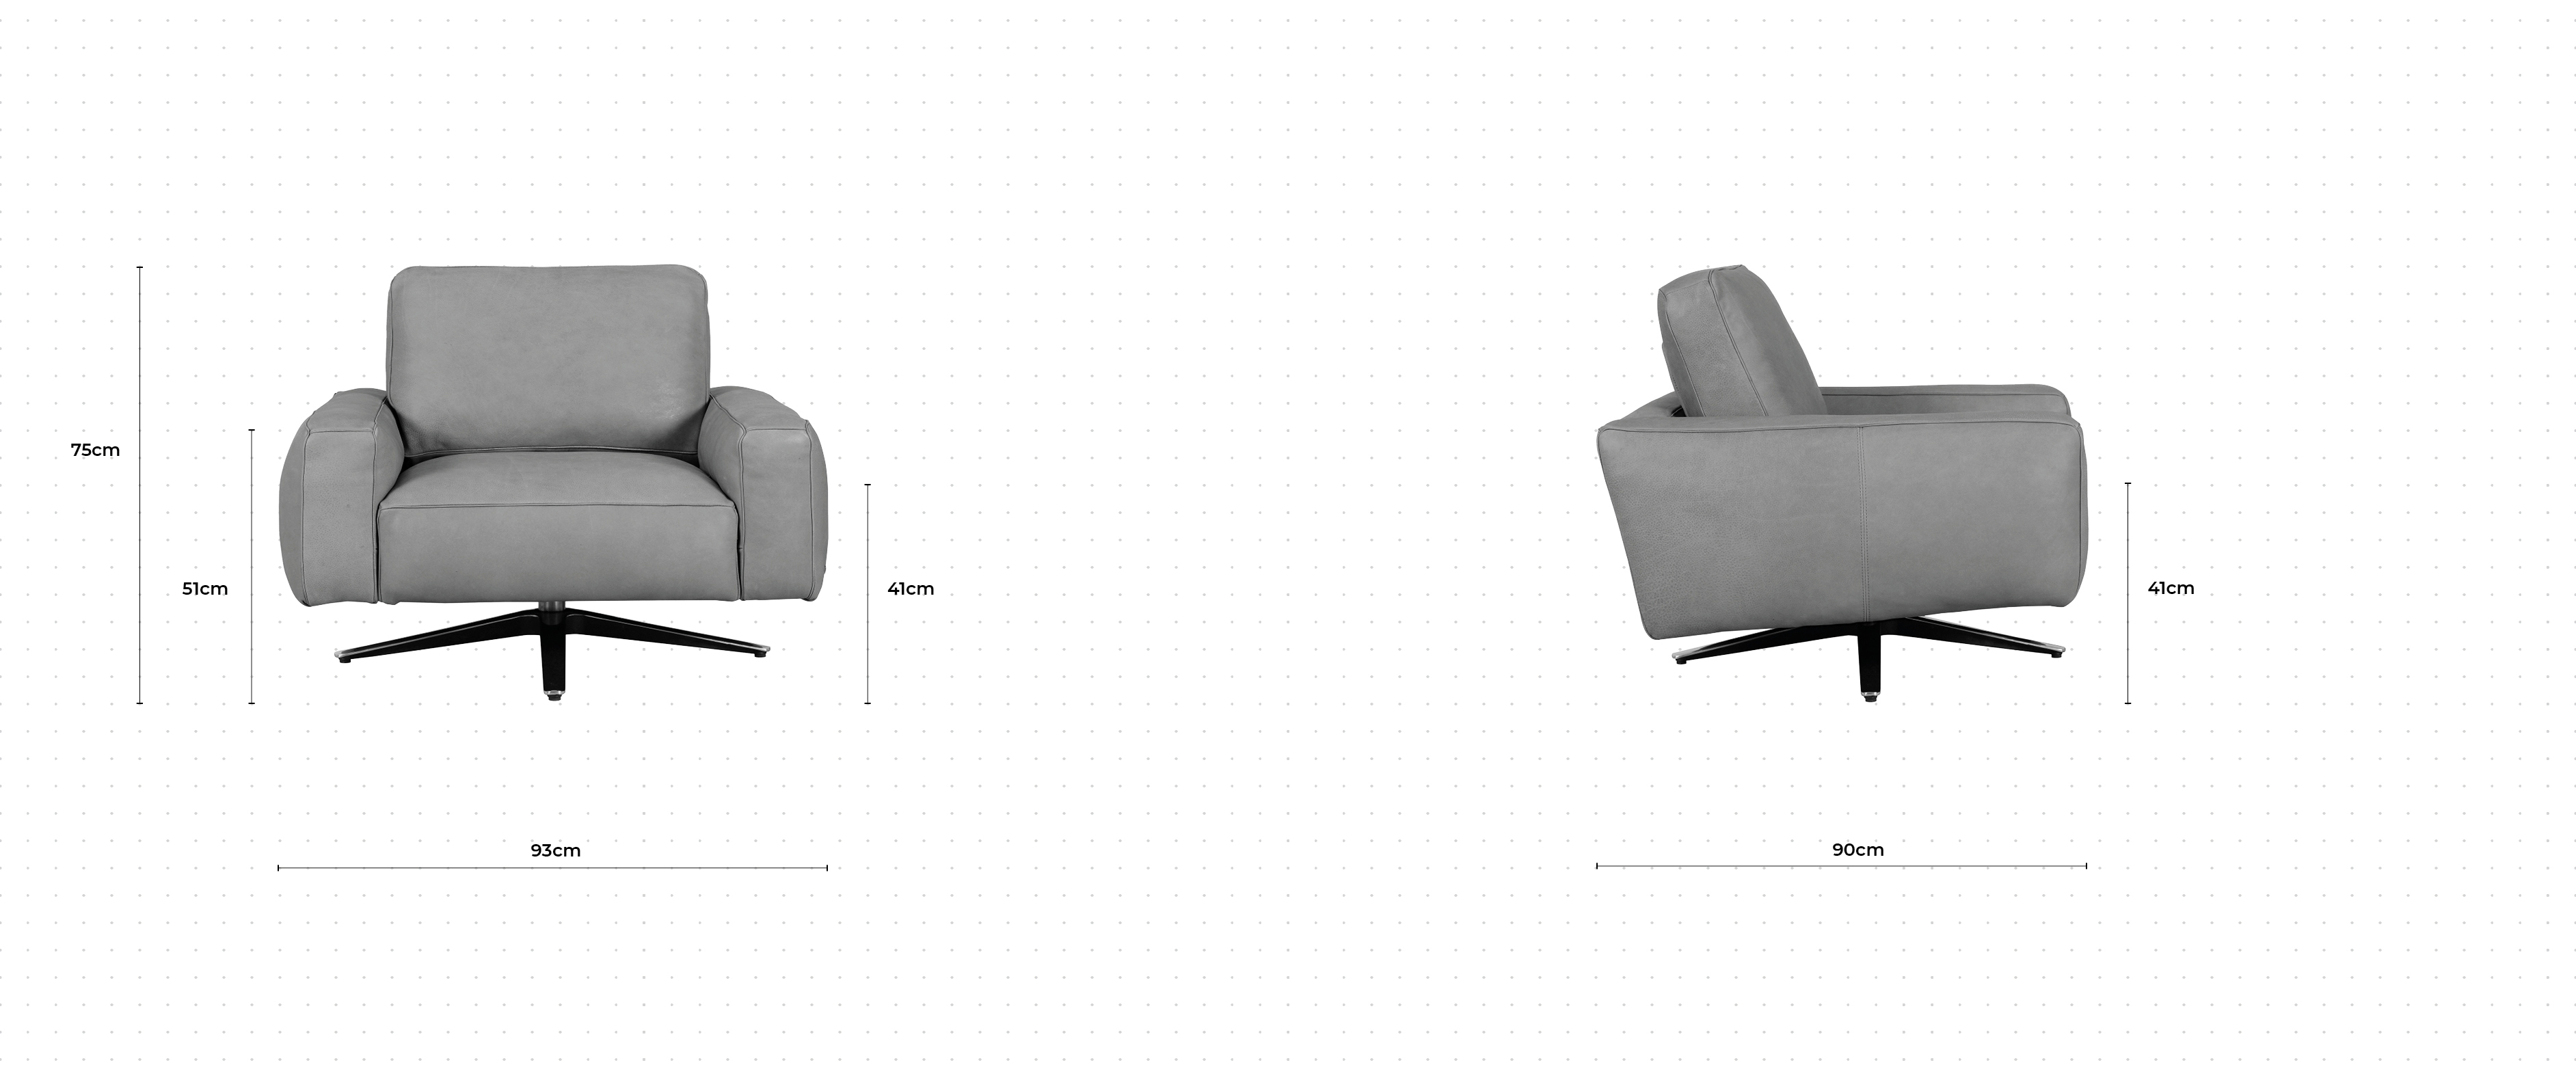 Truffle Chair dimensions